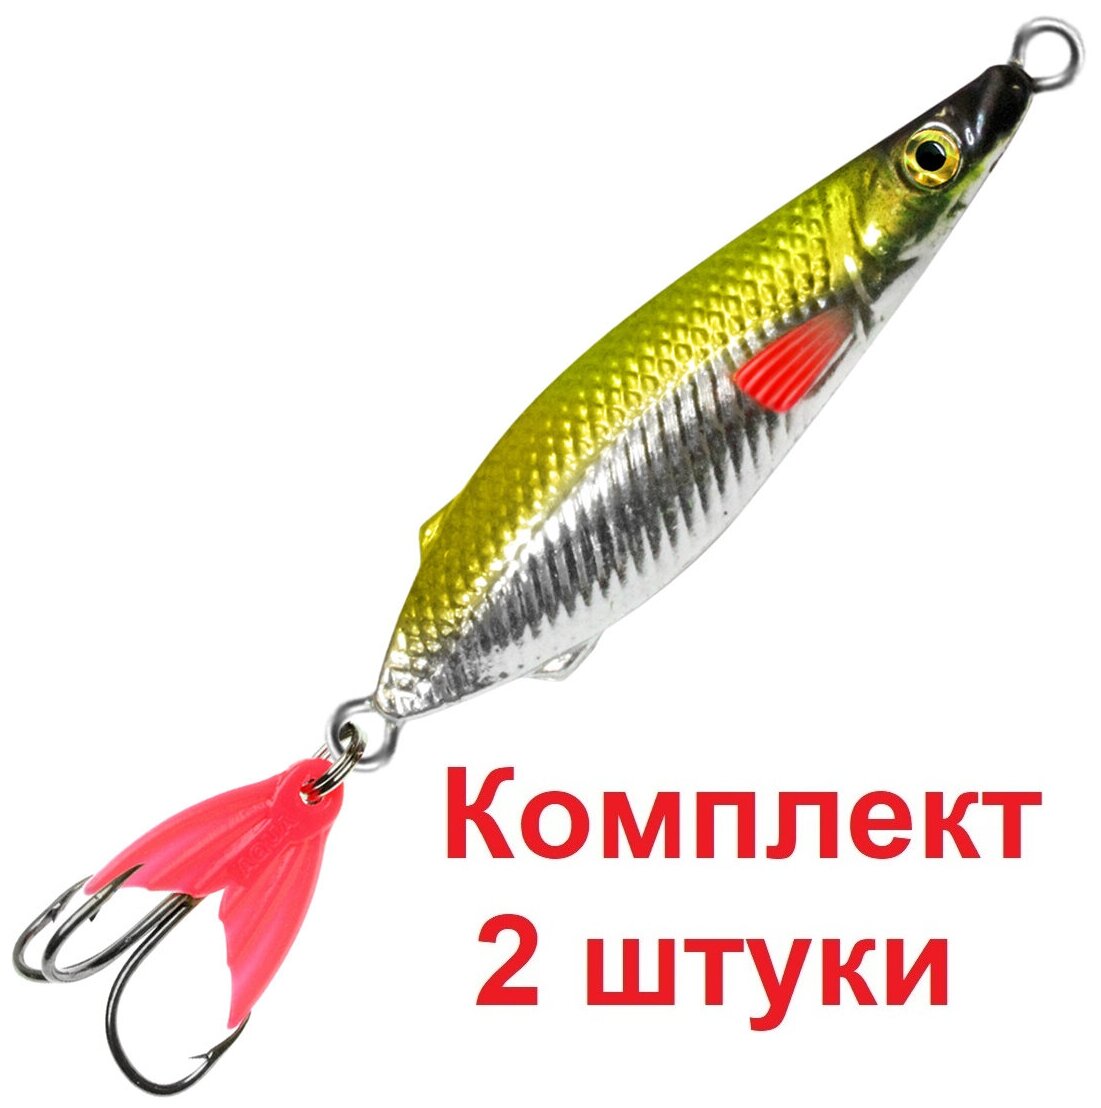 Блесна для рыбалки AQUA нерка 08,0g цвет 04 (серебро, желто-зеленый и черный металлик), 2 штуки в комплекте